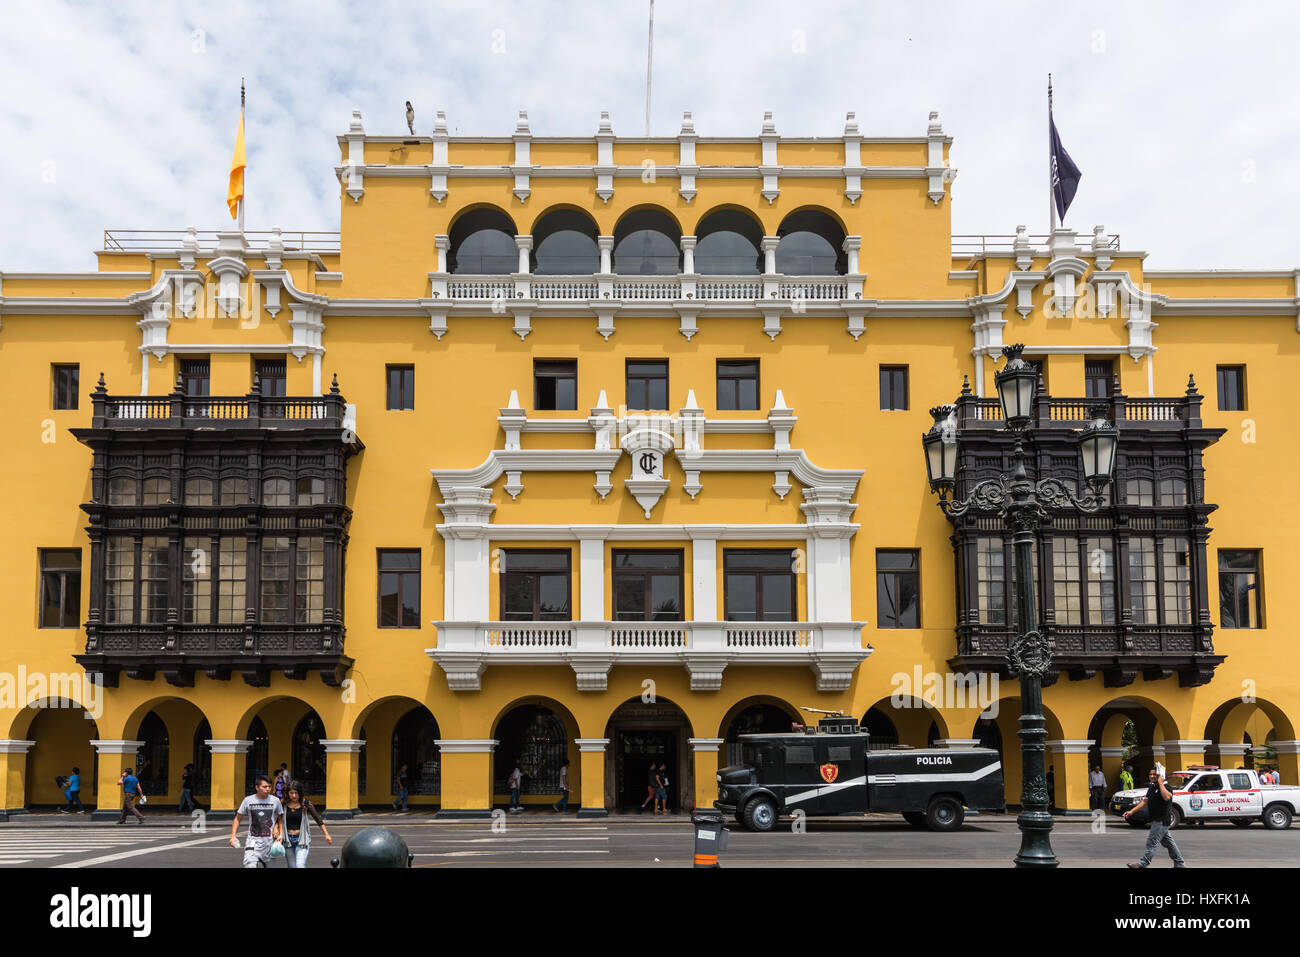 Palacio de la Unión building at Plaza mayor, Historic Centre. Lima, Peru. Stock Photo